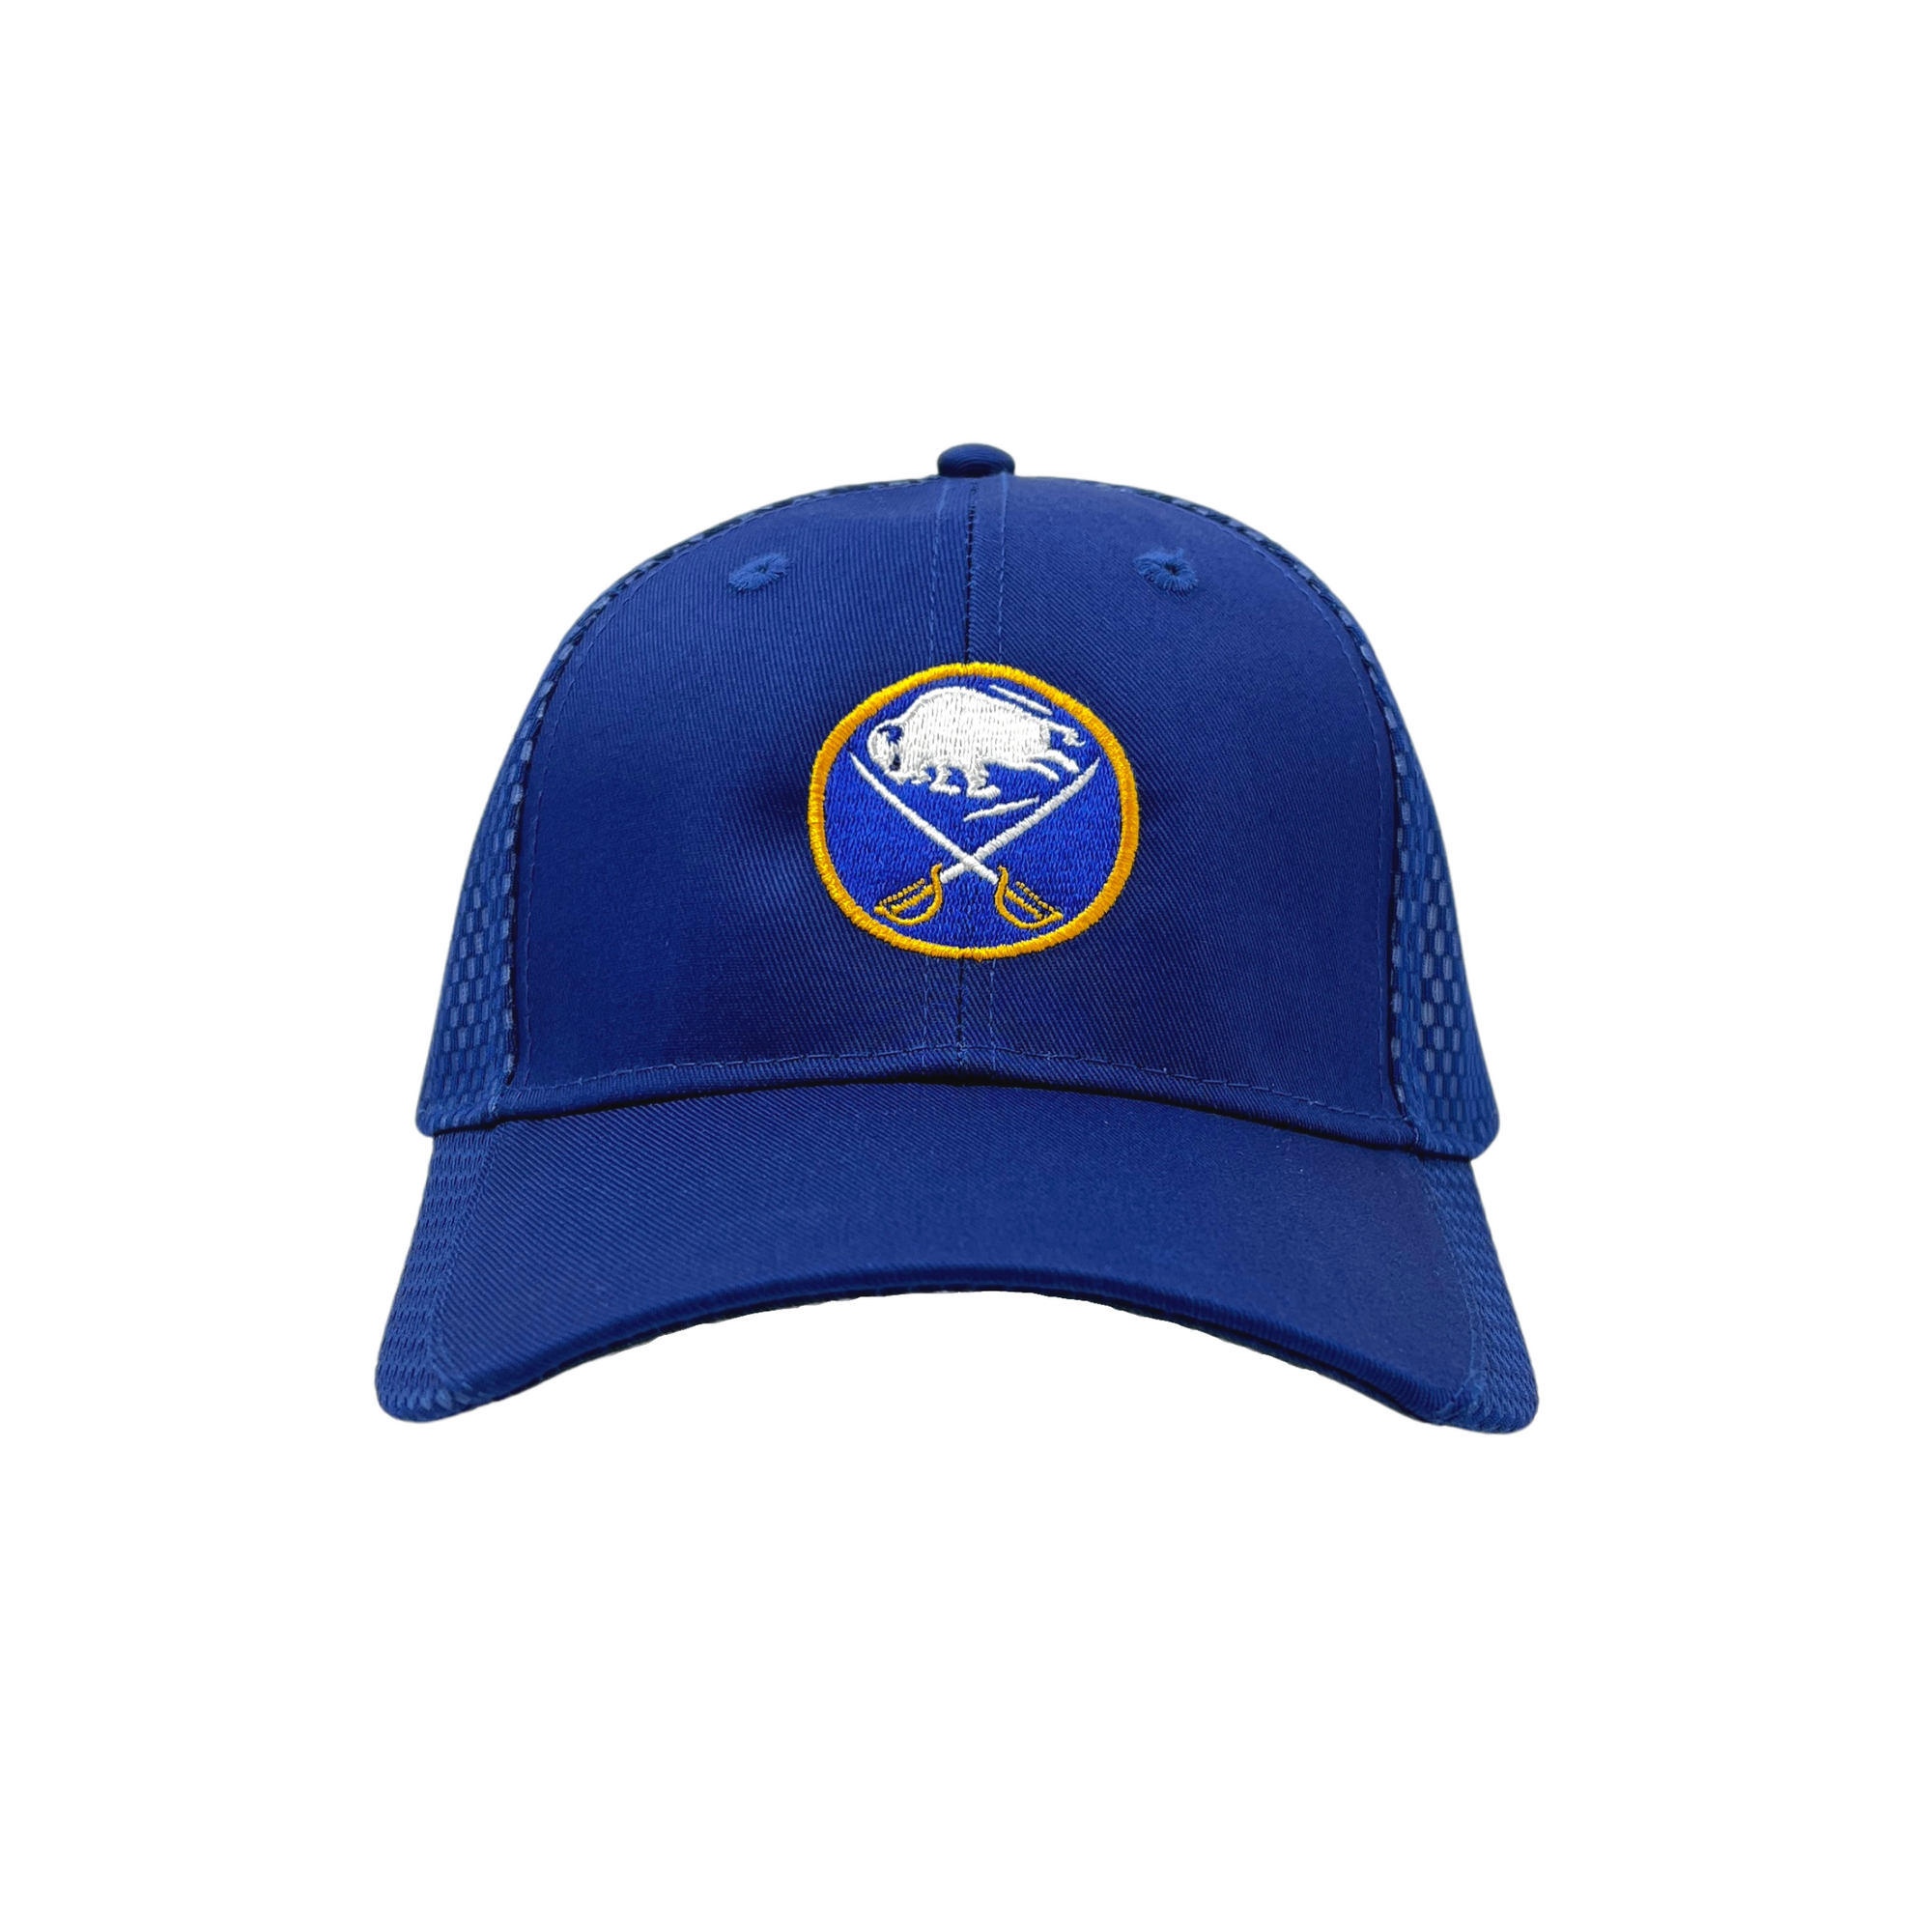 Buffalo Sabres Blue & Gold Adjustable Hat